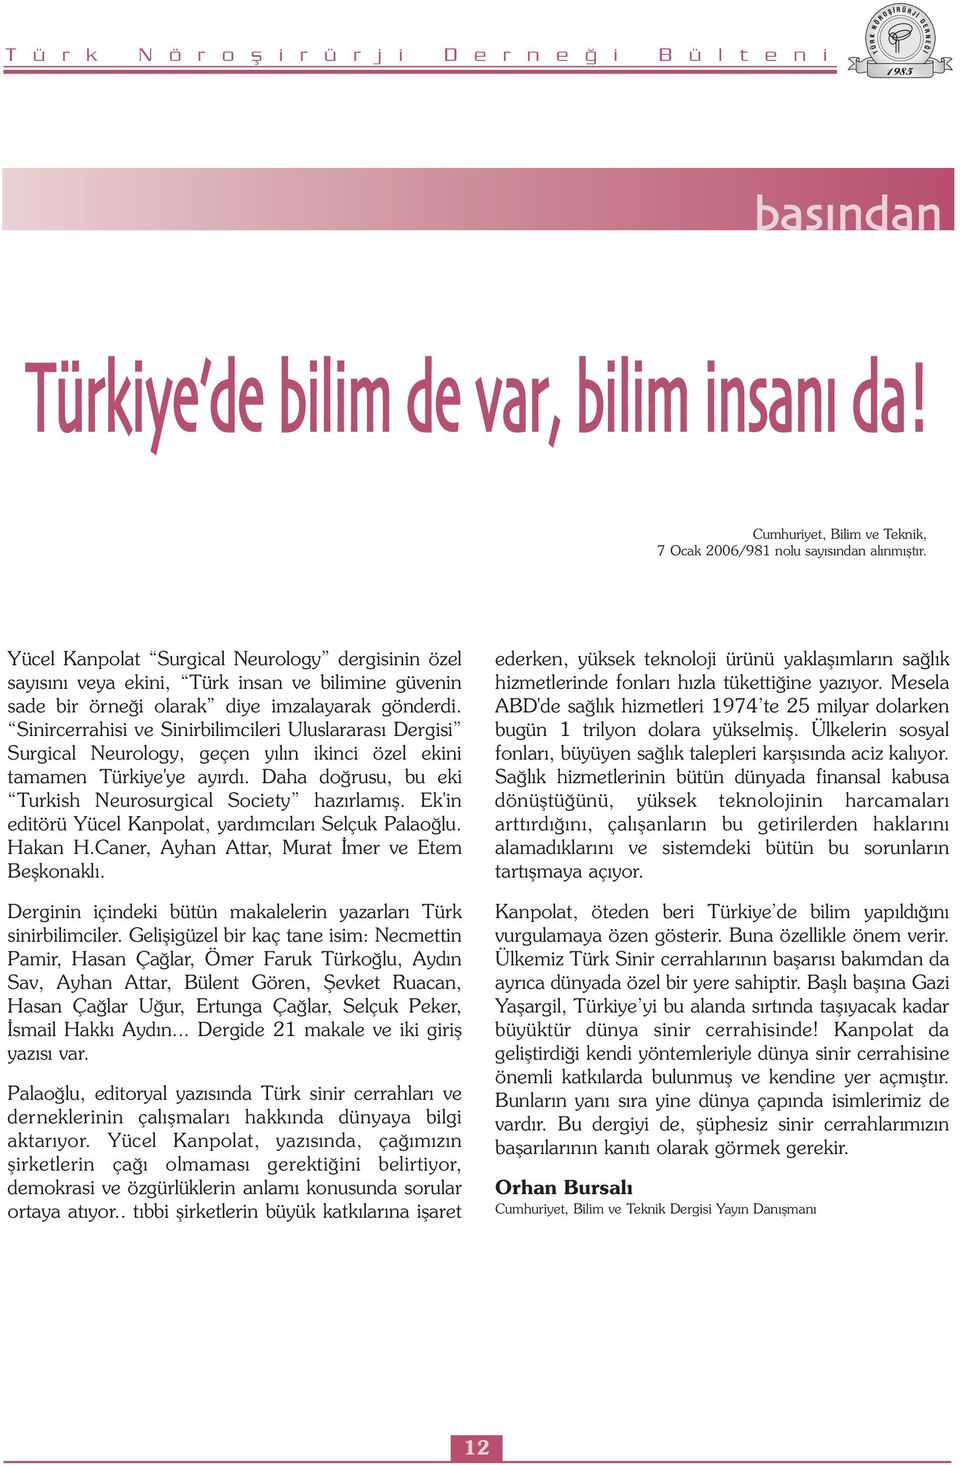 Sinircerrahisi ve Sinirbilimcileri Uluslararası Dergisi Surgical Neurology, geçen yılın ikinci özel ekini tamamen Türkiye'ye ayırdı. Daha doğrusu, bu eki Turkish Neurosurgical Society hazırlamış.